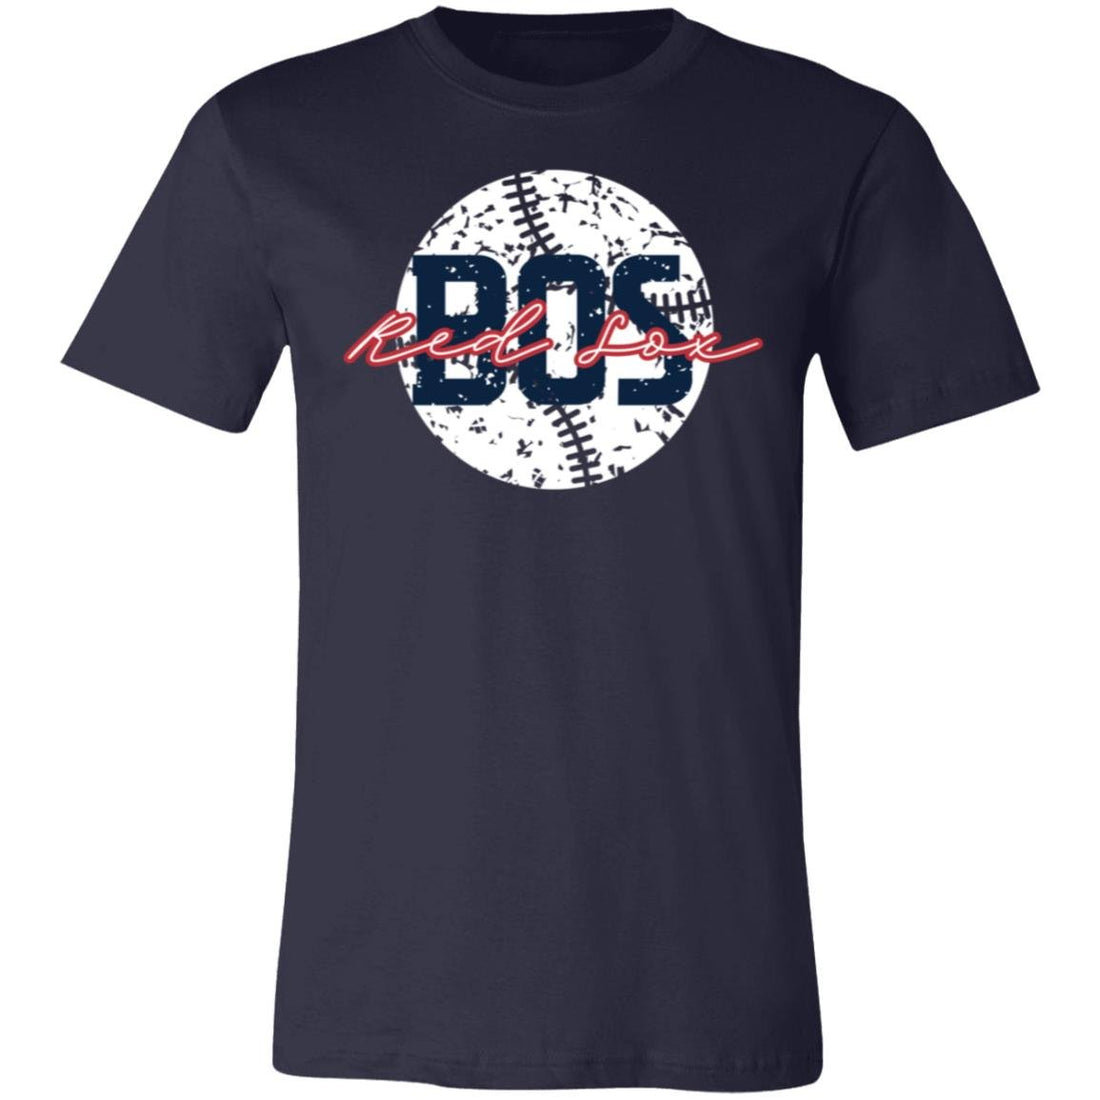 BOS Sox T-Shirt - T-Shirts - Positively Sassy - BOS Sox T-Shirt